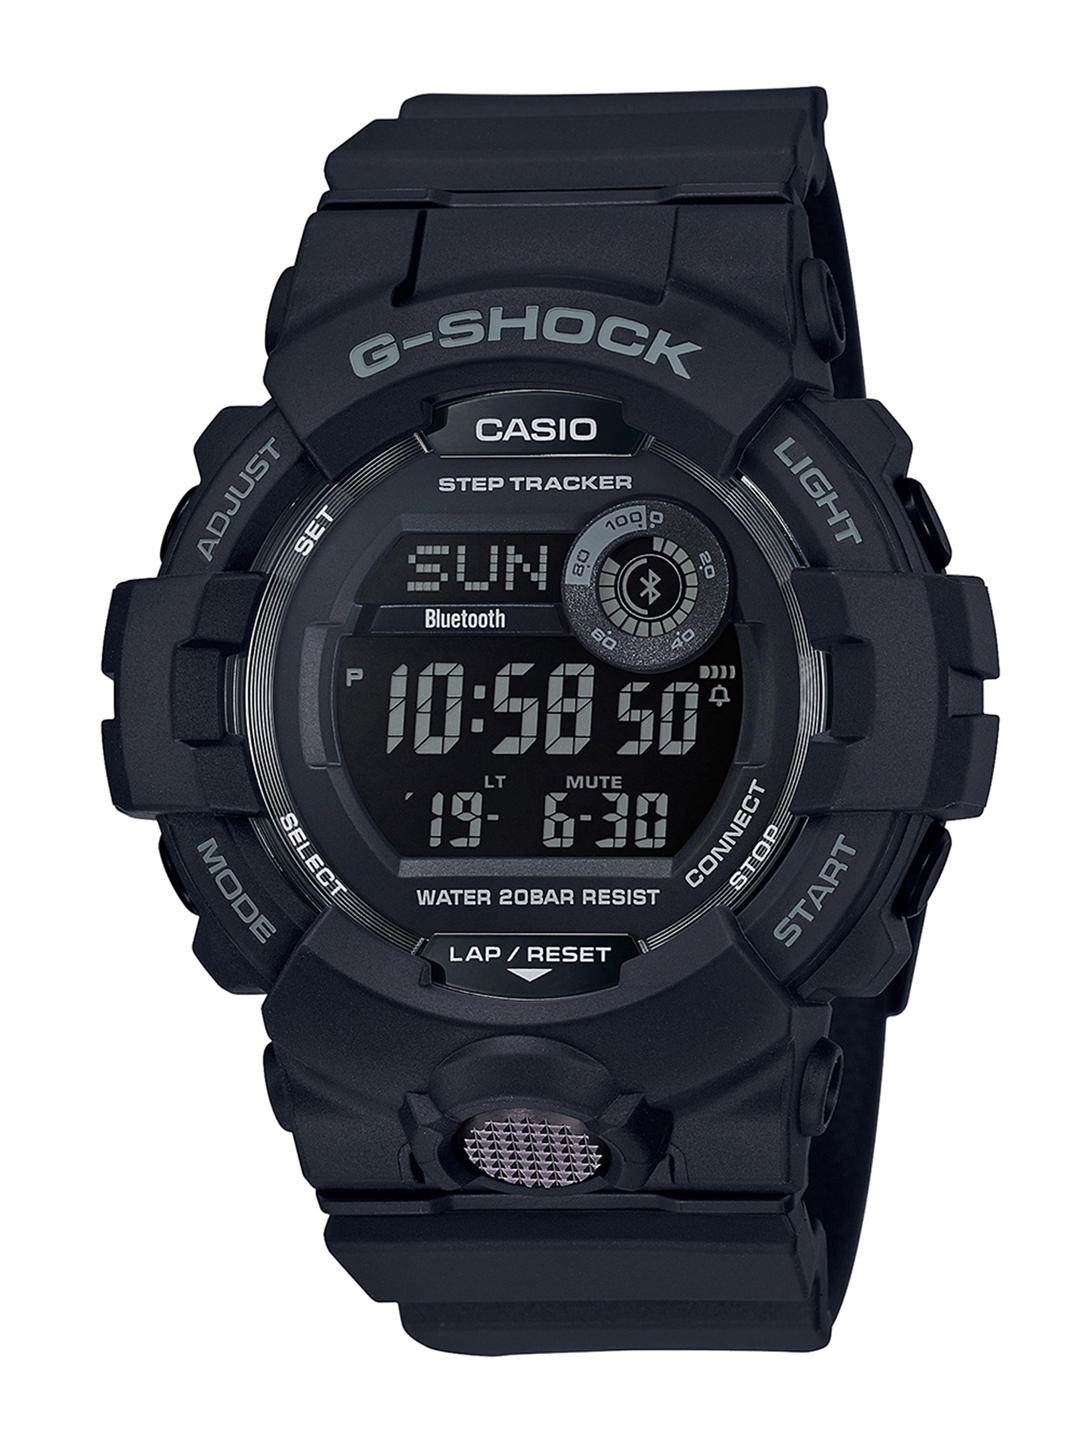 Buy Casio G Shock Men Black Digital Watch G899 GBD 800 1BDR - Watches ...